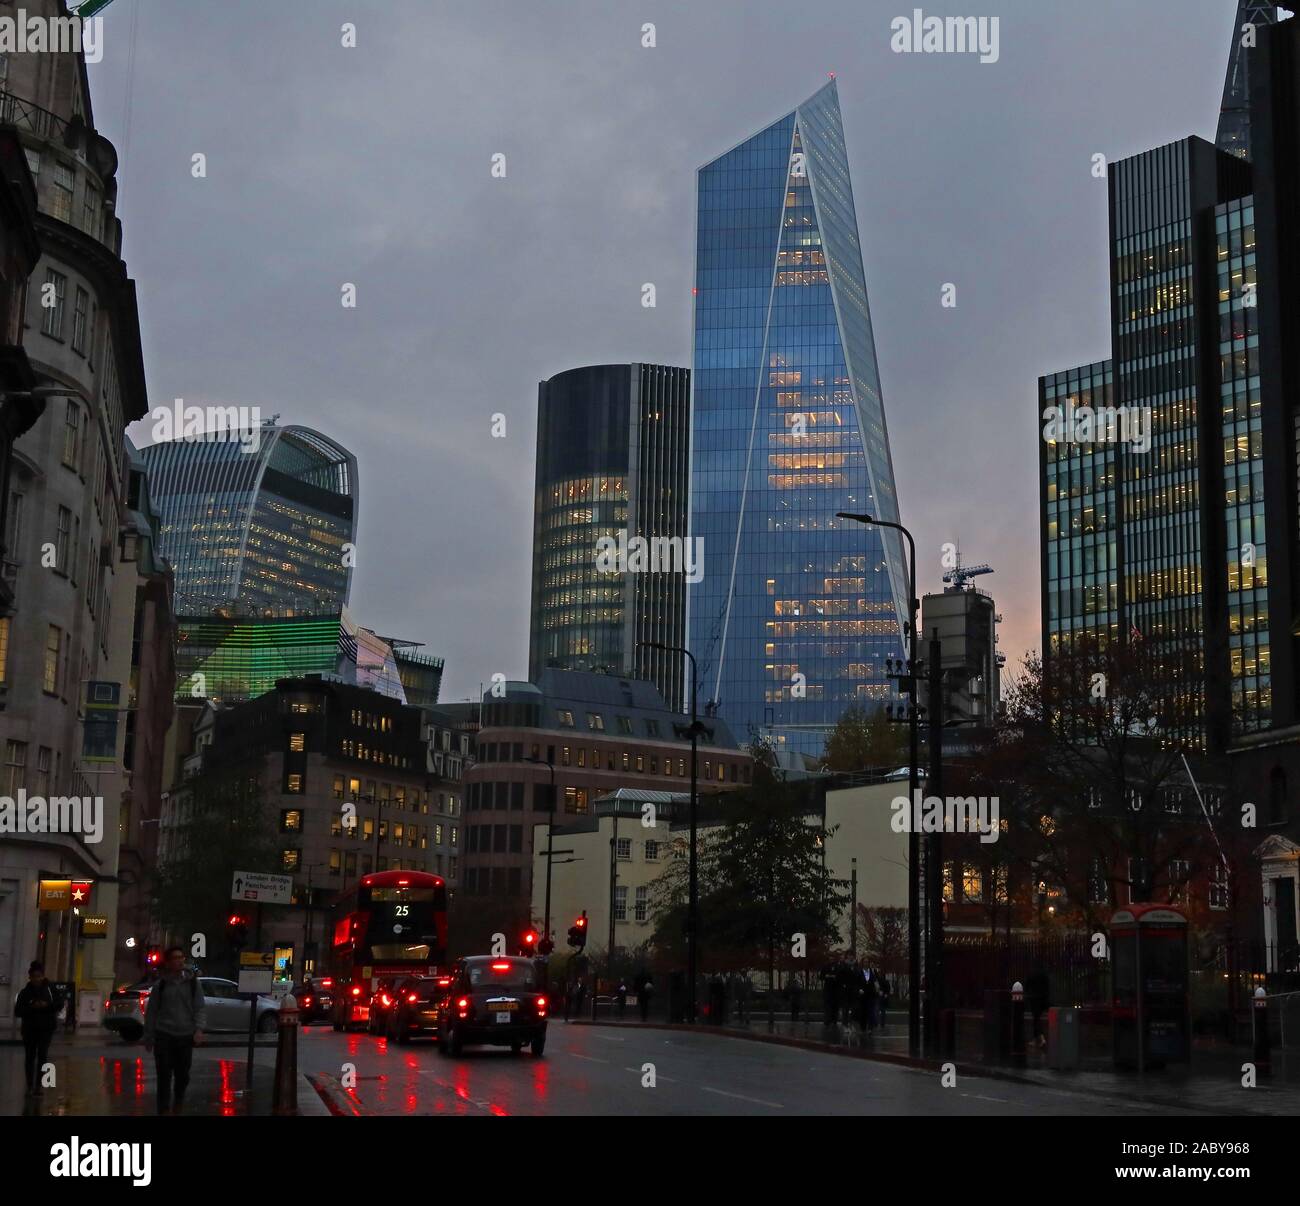 Città di Londra skyline, da Leadenhall Street, uffici, grattacieli, architettura, al tramonto, Londra, Inghilterra, Regno Unito, EC3A 8BN Foto Stock